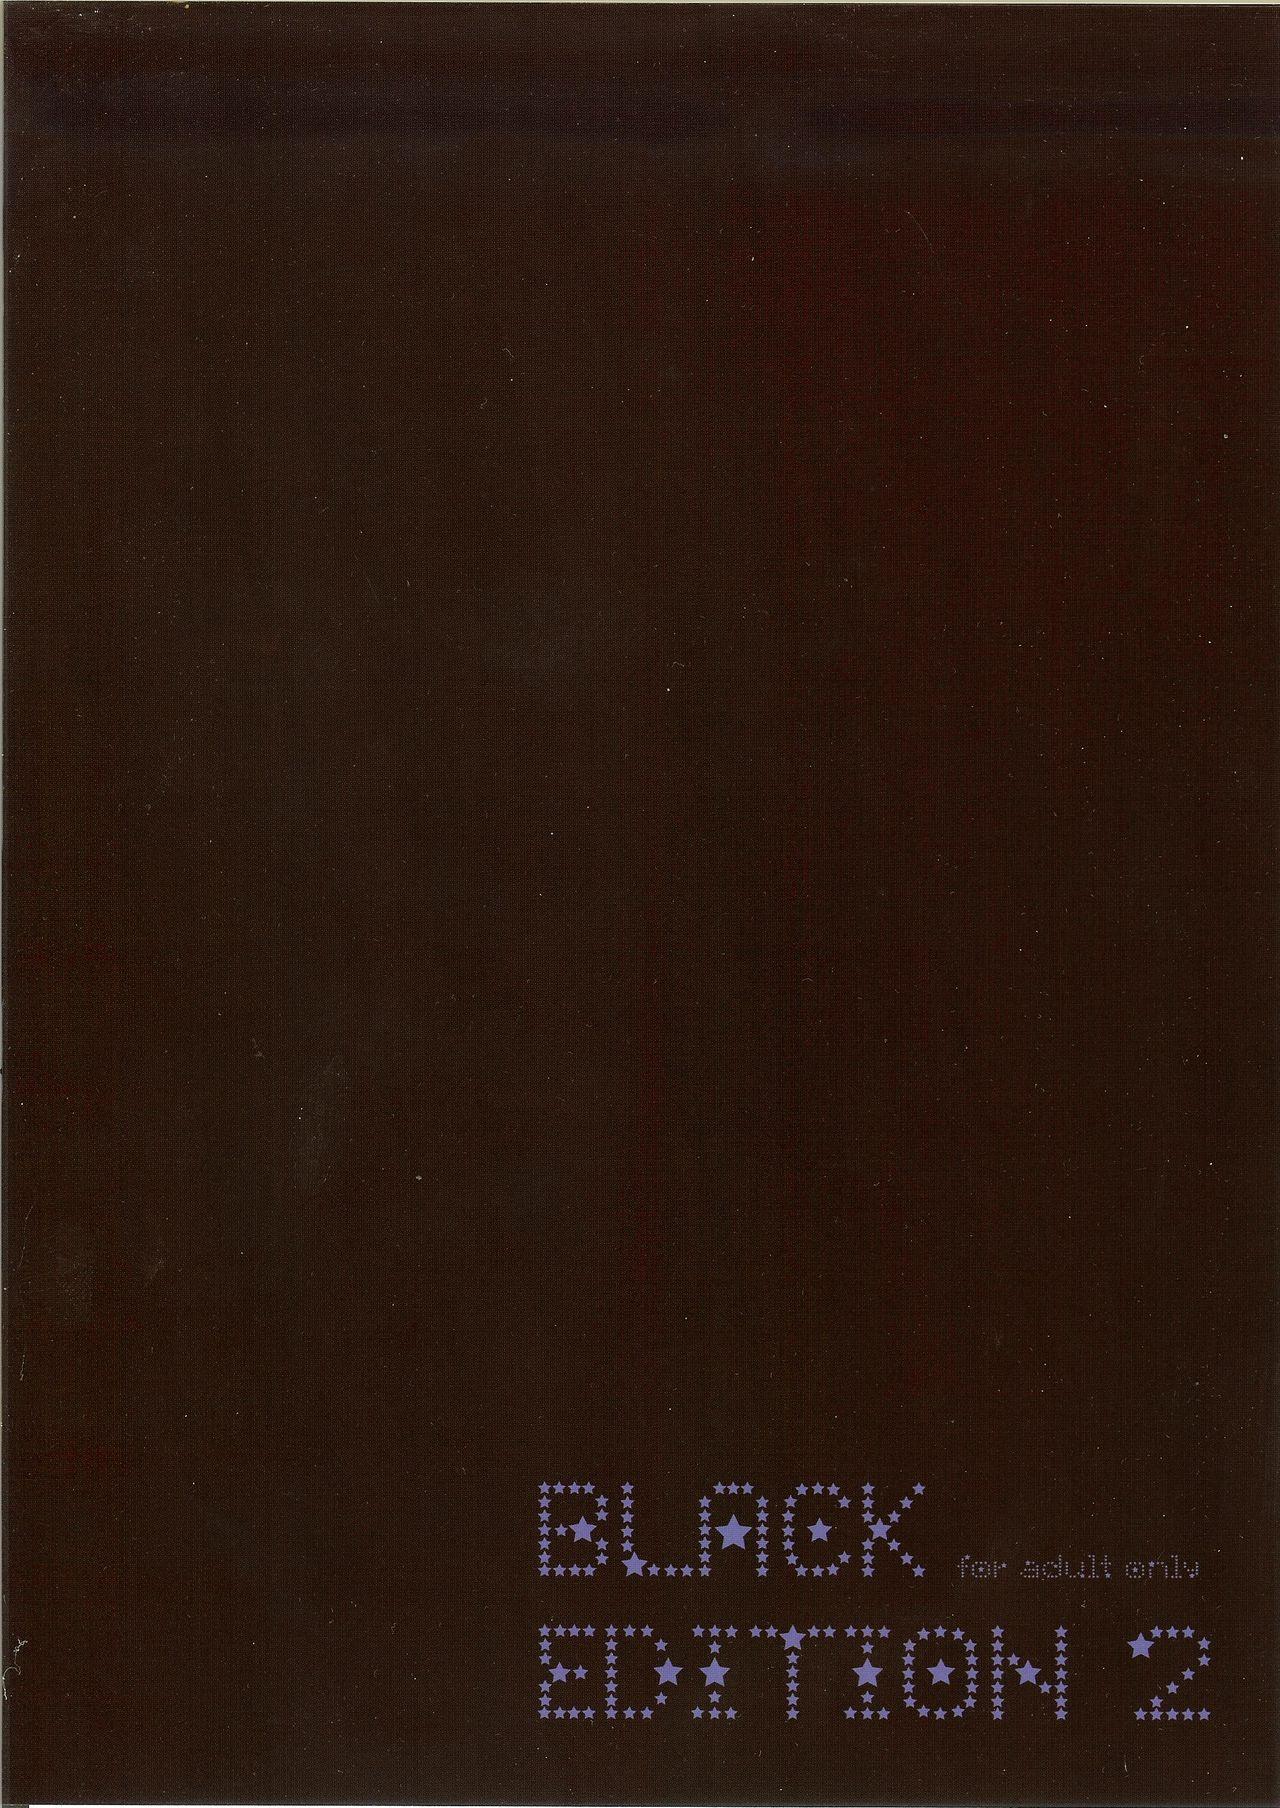 Bra BLACK EDITION 2 - Fate grand order Cocksuckers - Page 19